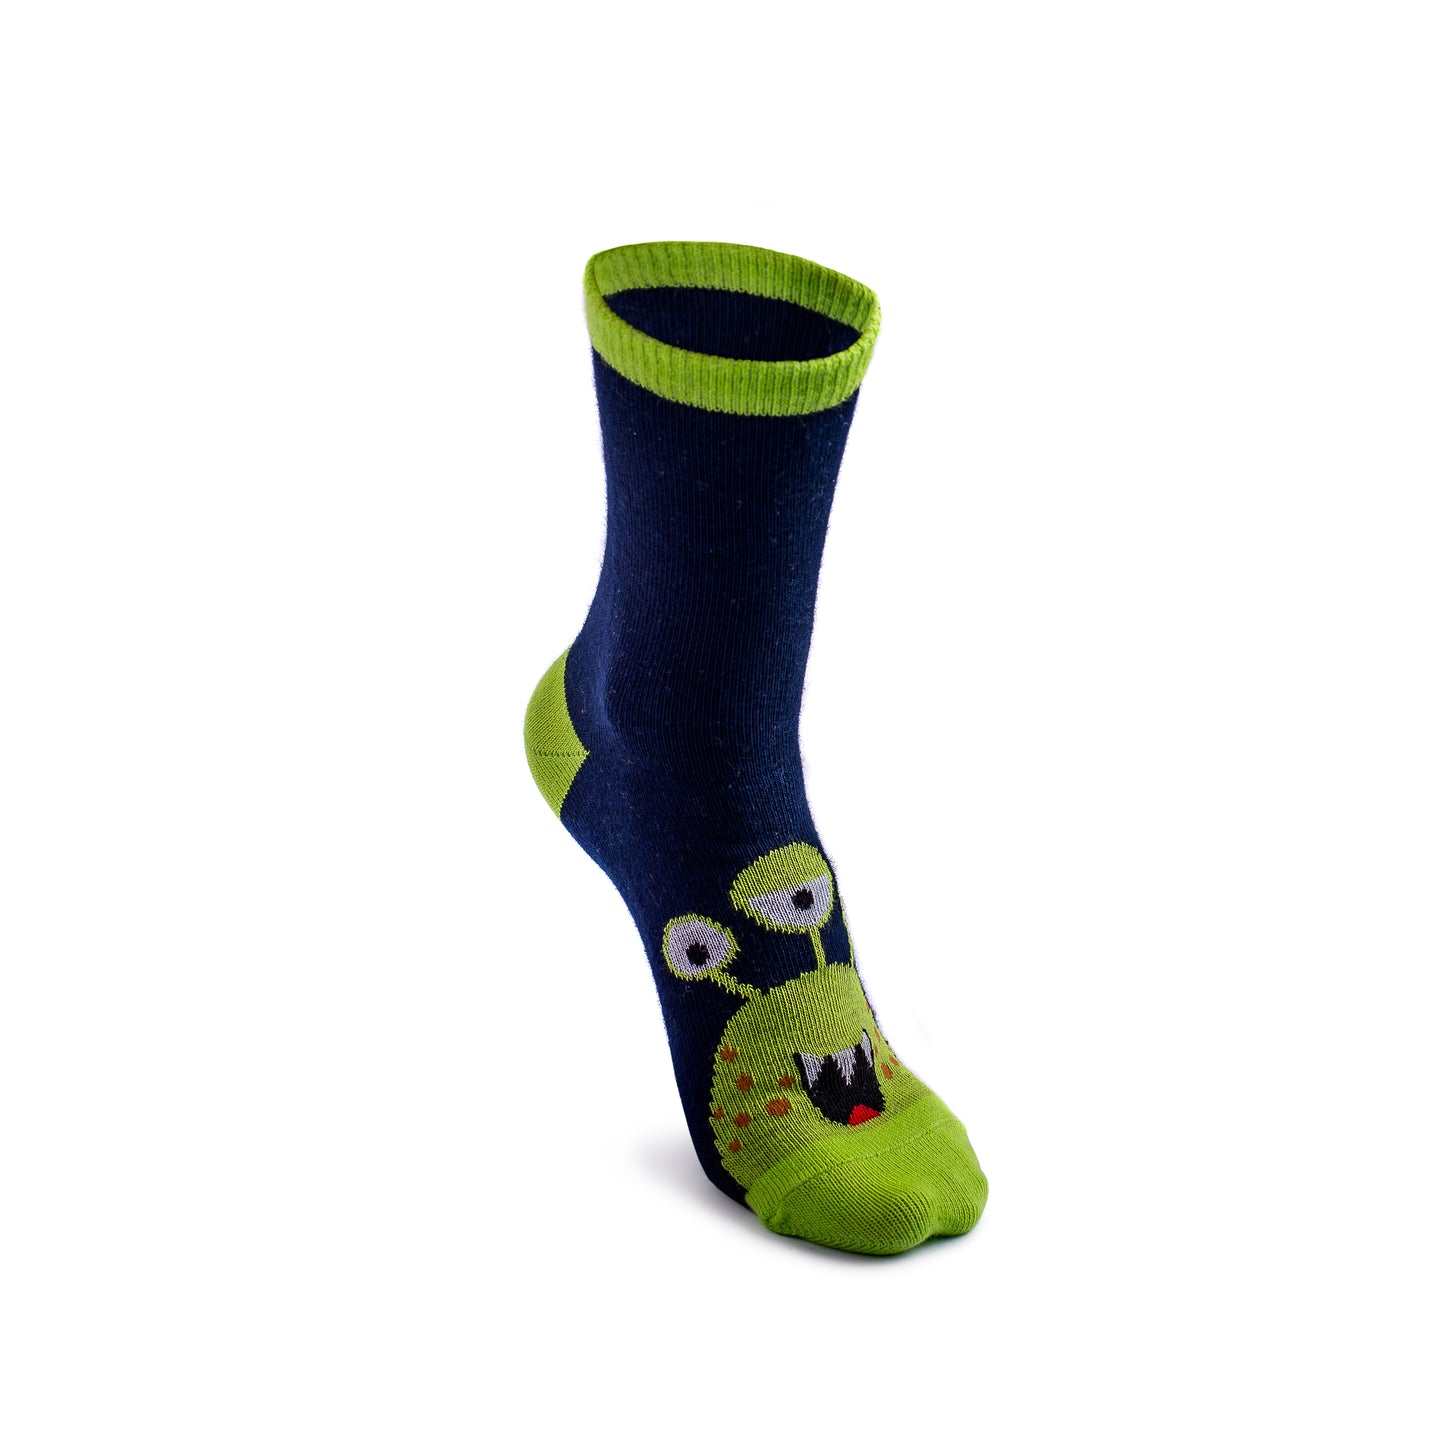 Socken für Kinder, Funny Monsters, mittelhoch – 5 Paar Packung